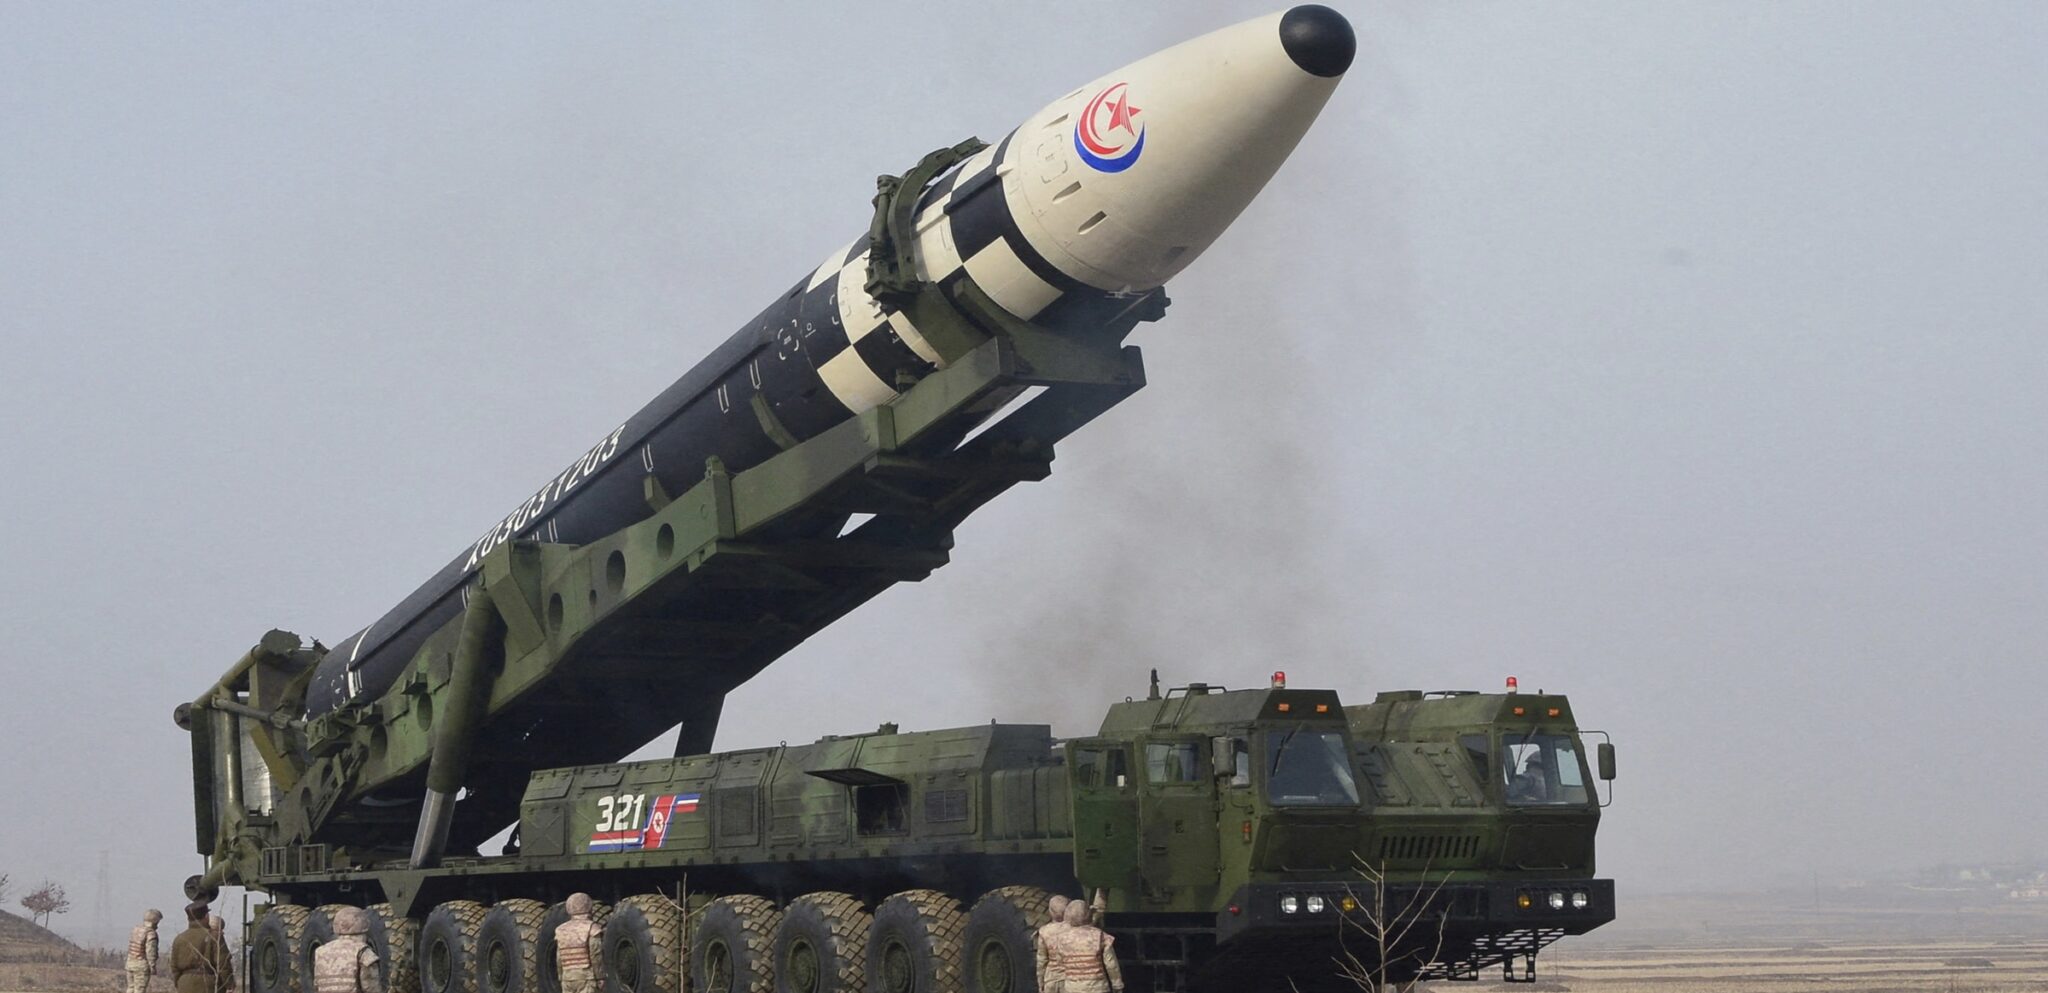 كوريا الشمالية تطلق صاروخاً بالستياً